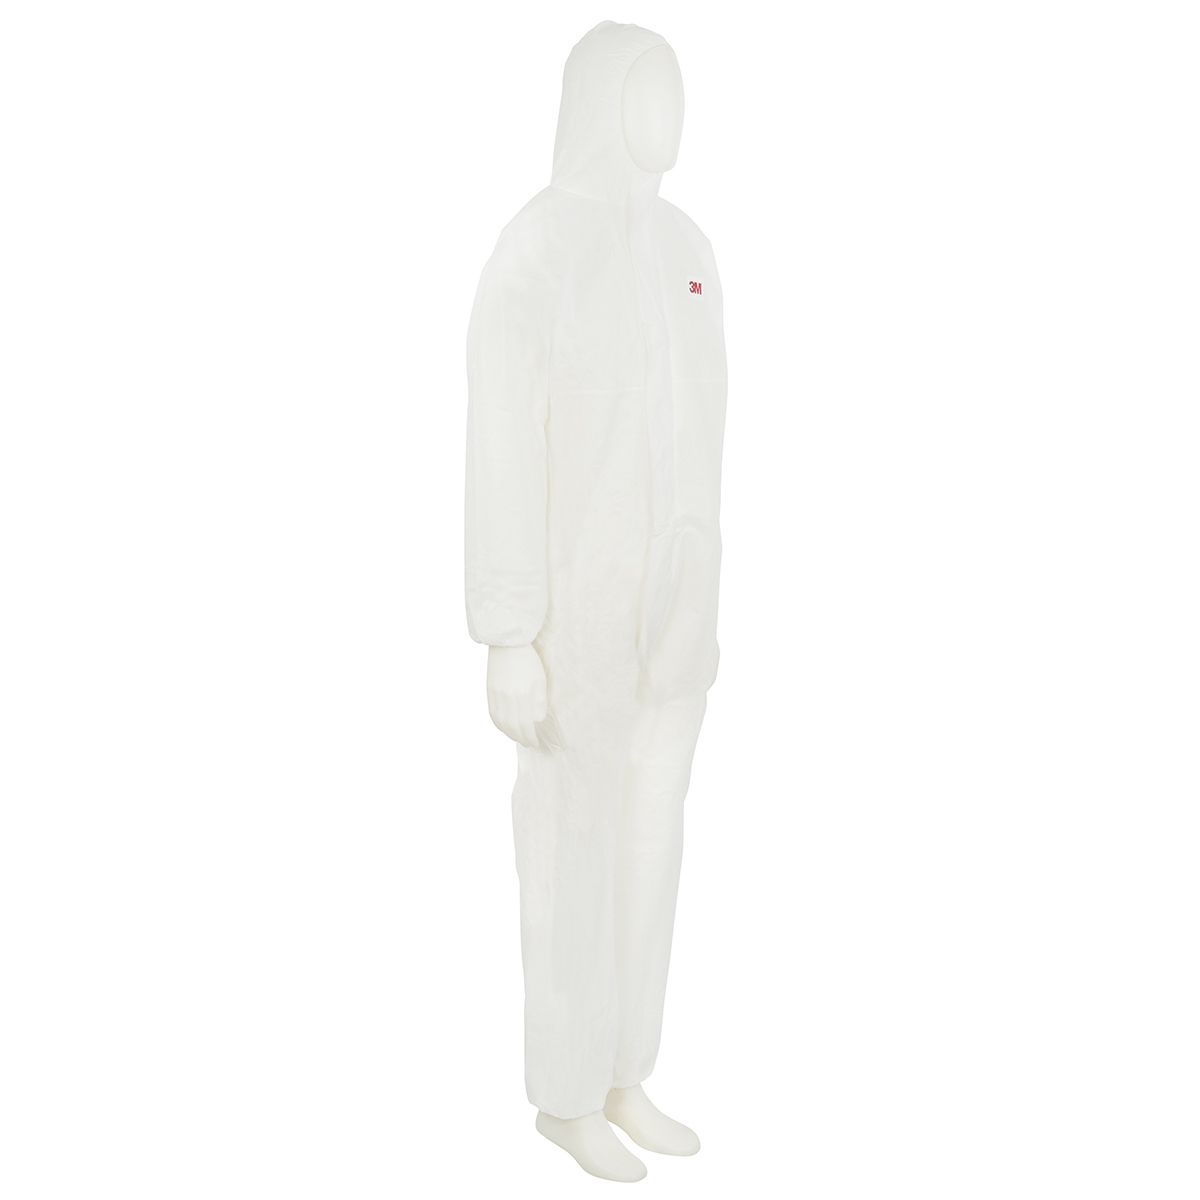 Mono desechable para hombre 3M de color Blanco, talla XXXL, propriedades:protección contra polvo y salpicaduras,